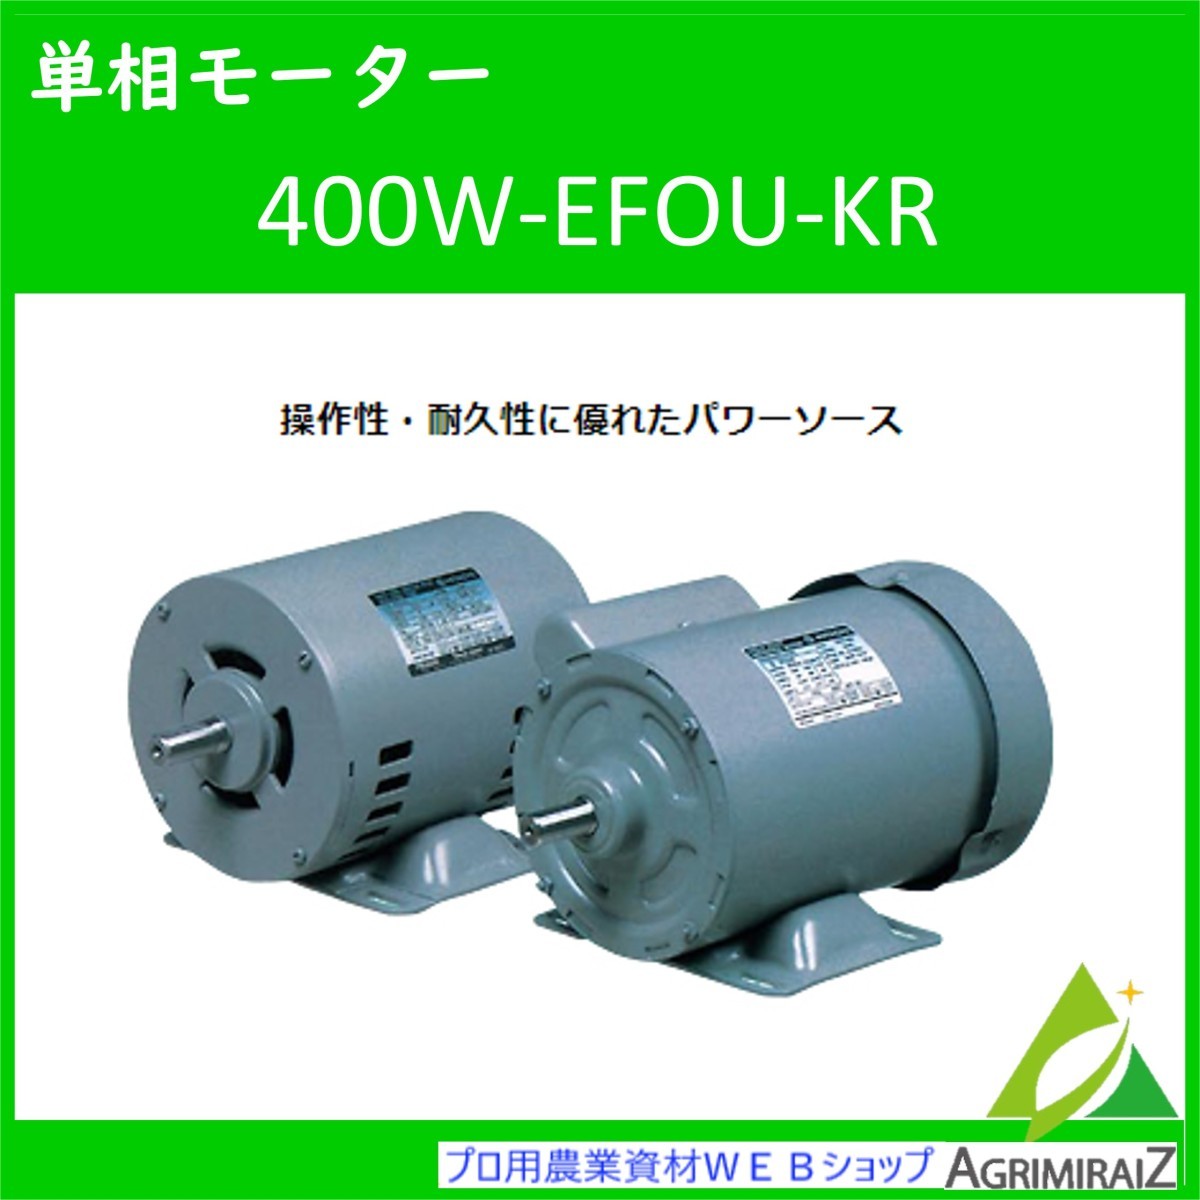 日立単相モーター Mコンデンサー 400W-EFOU-KR